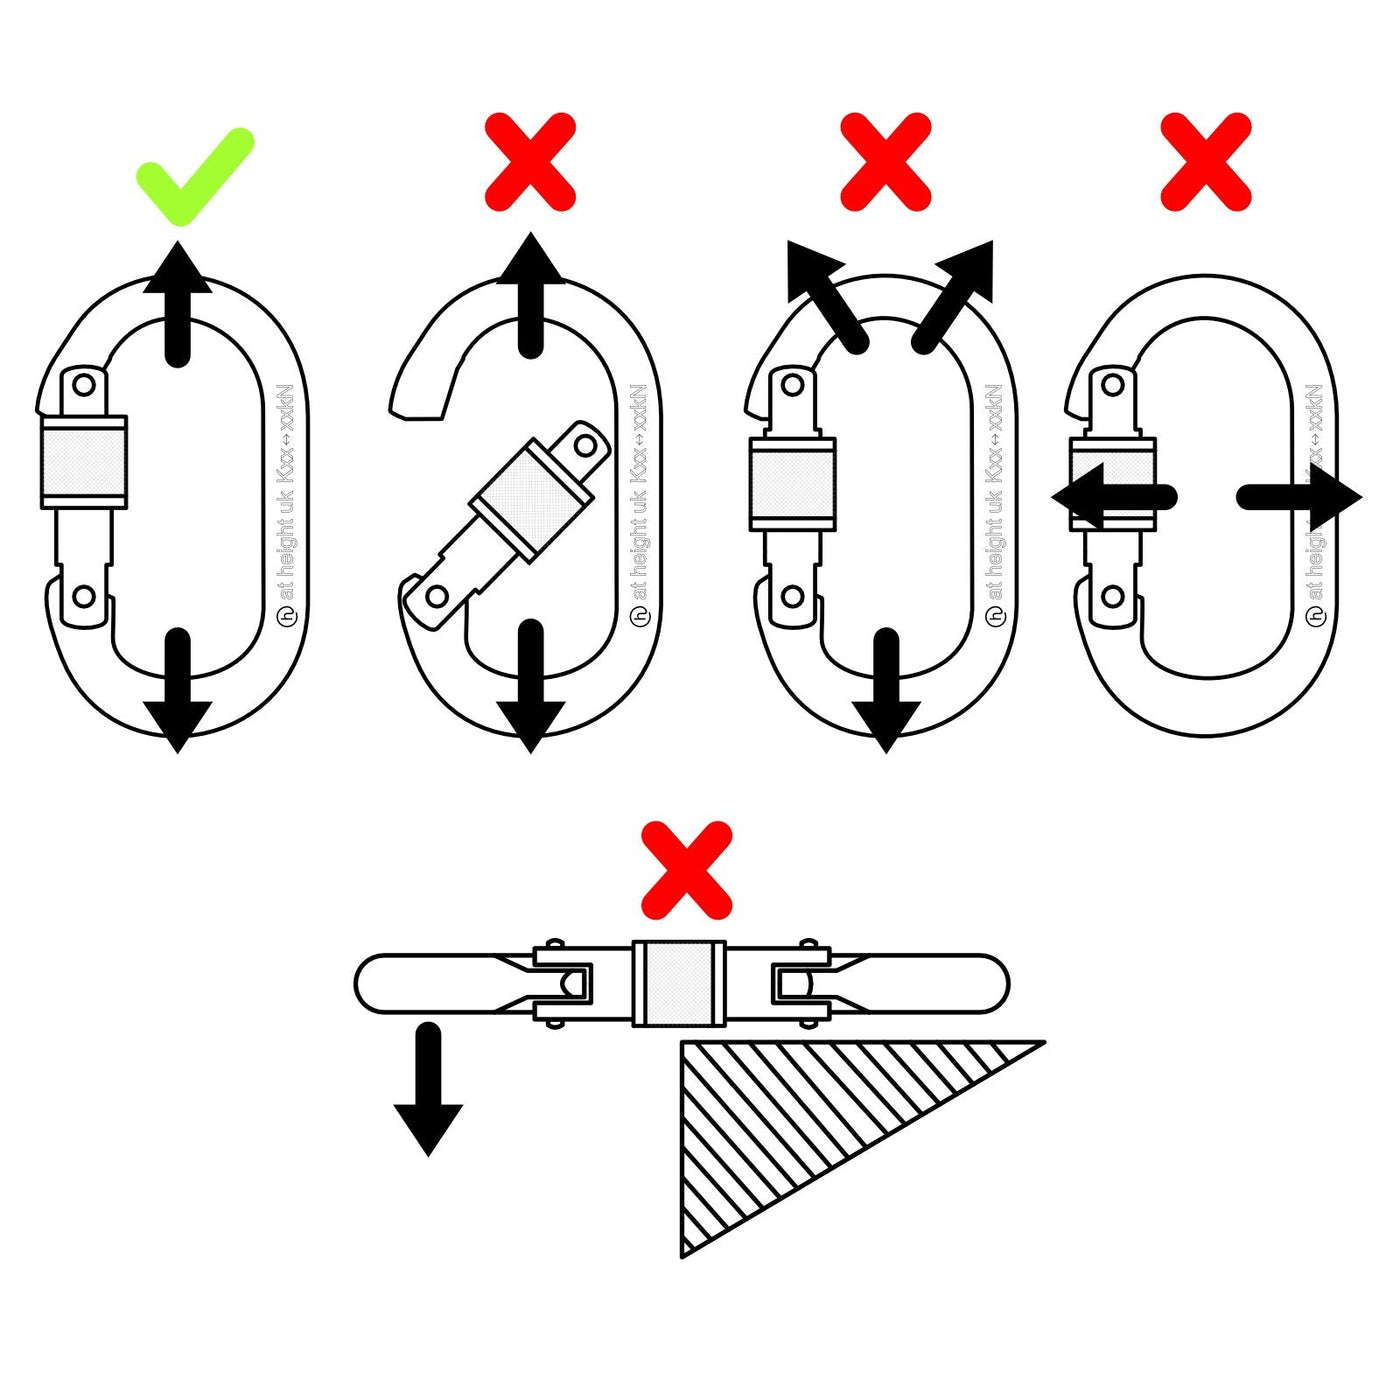 manual STEEL OVAL LOCKING CARABINERS PCA-1276, PCA-1703, PCA-1702